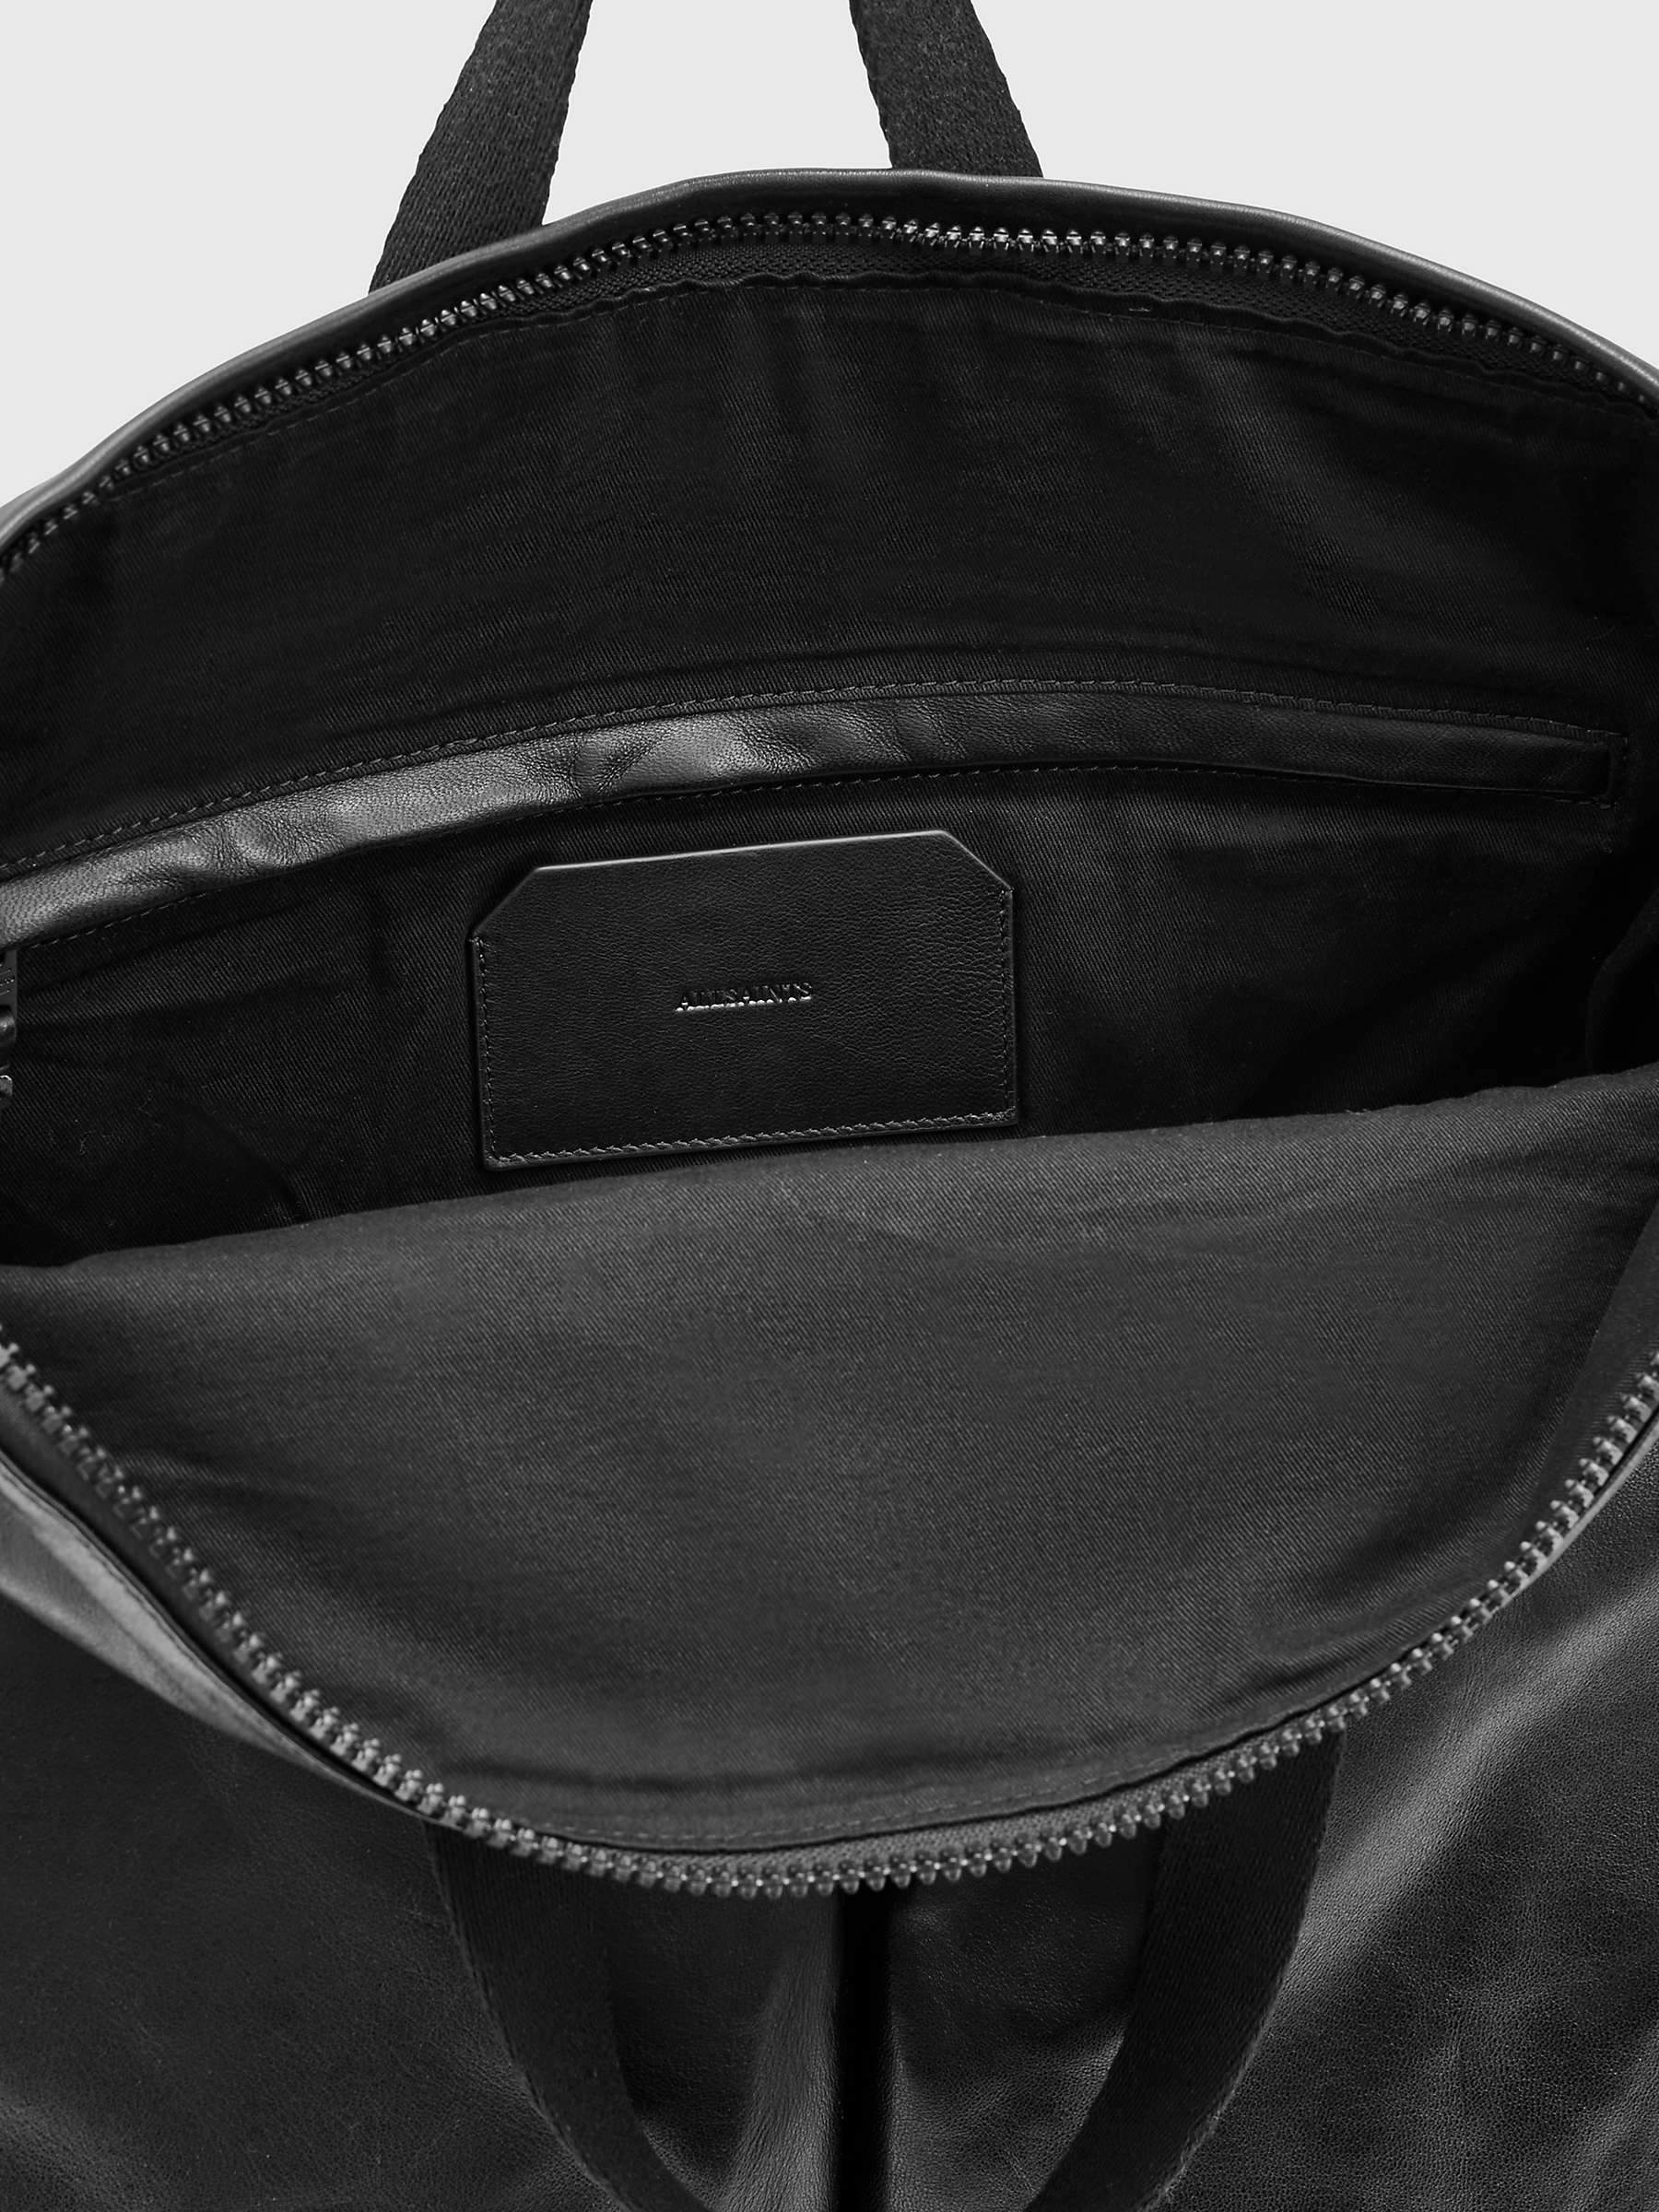 Buy AllSaints Force Backpack, Black Online at johnlewis.com